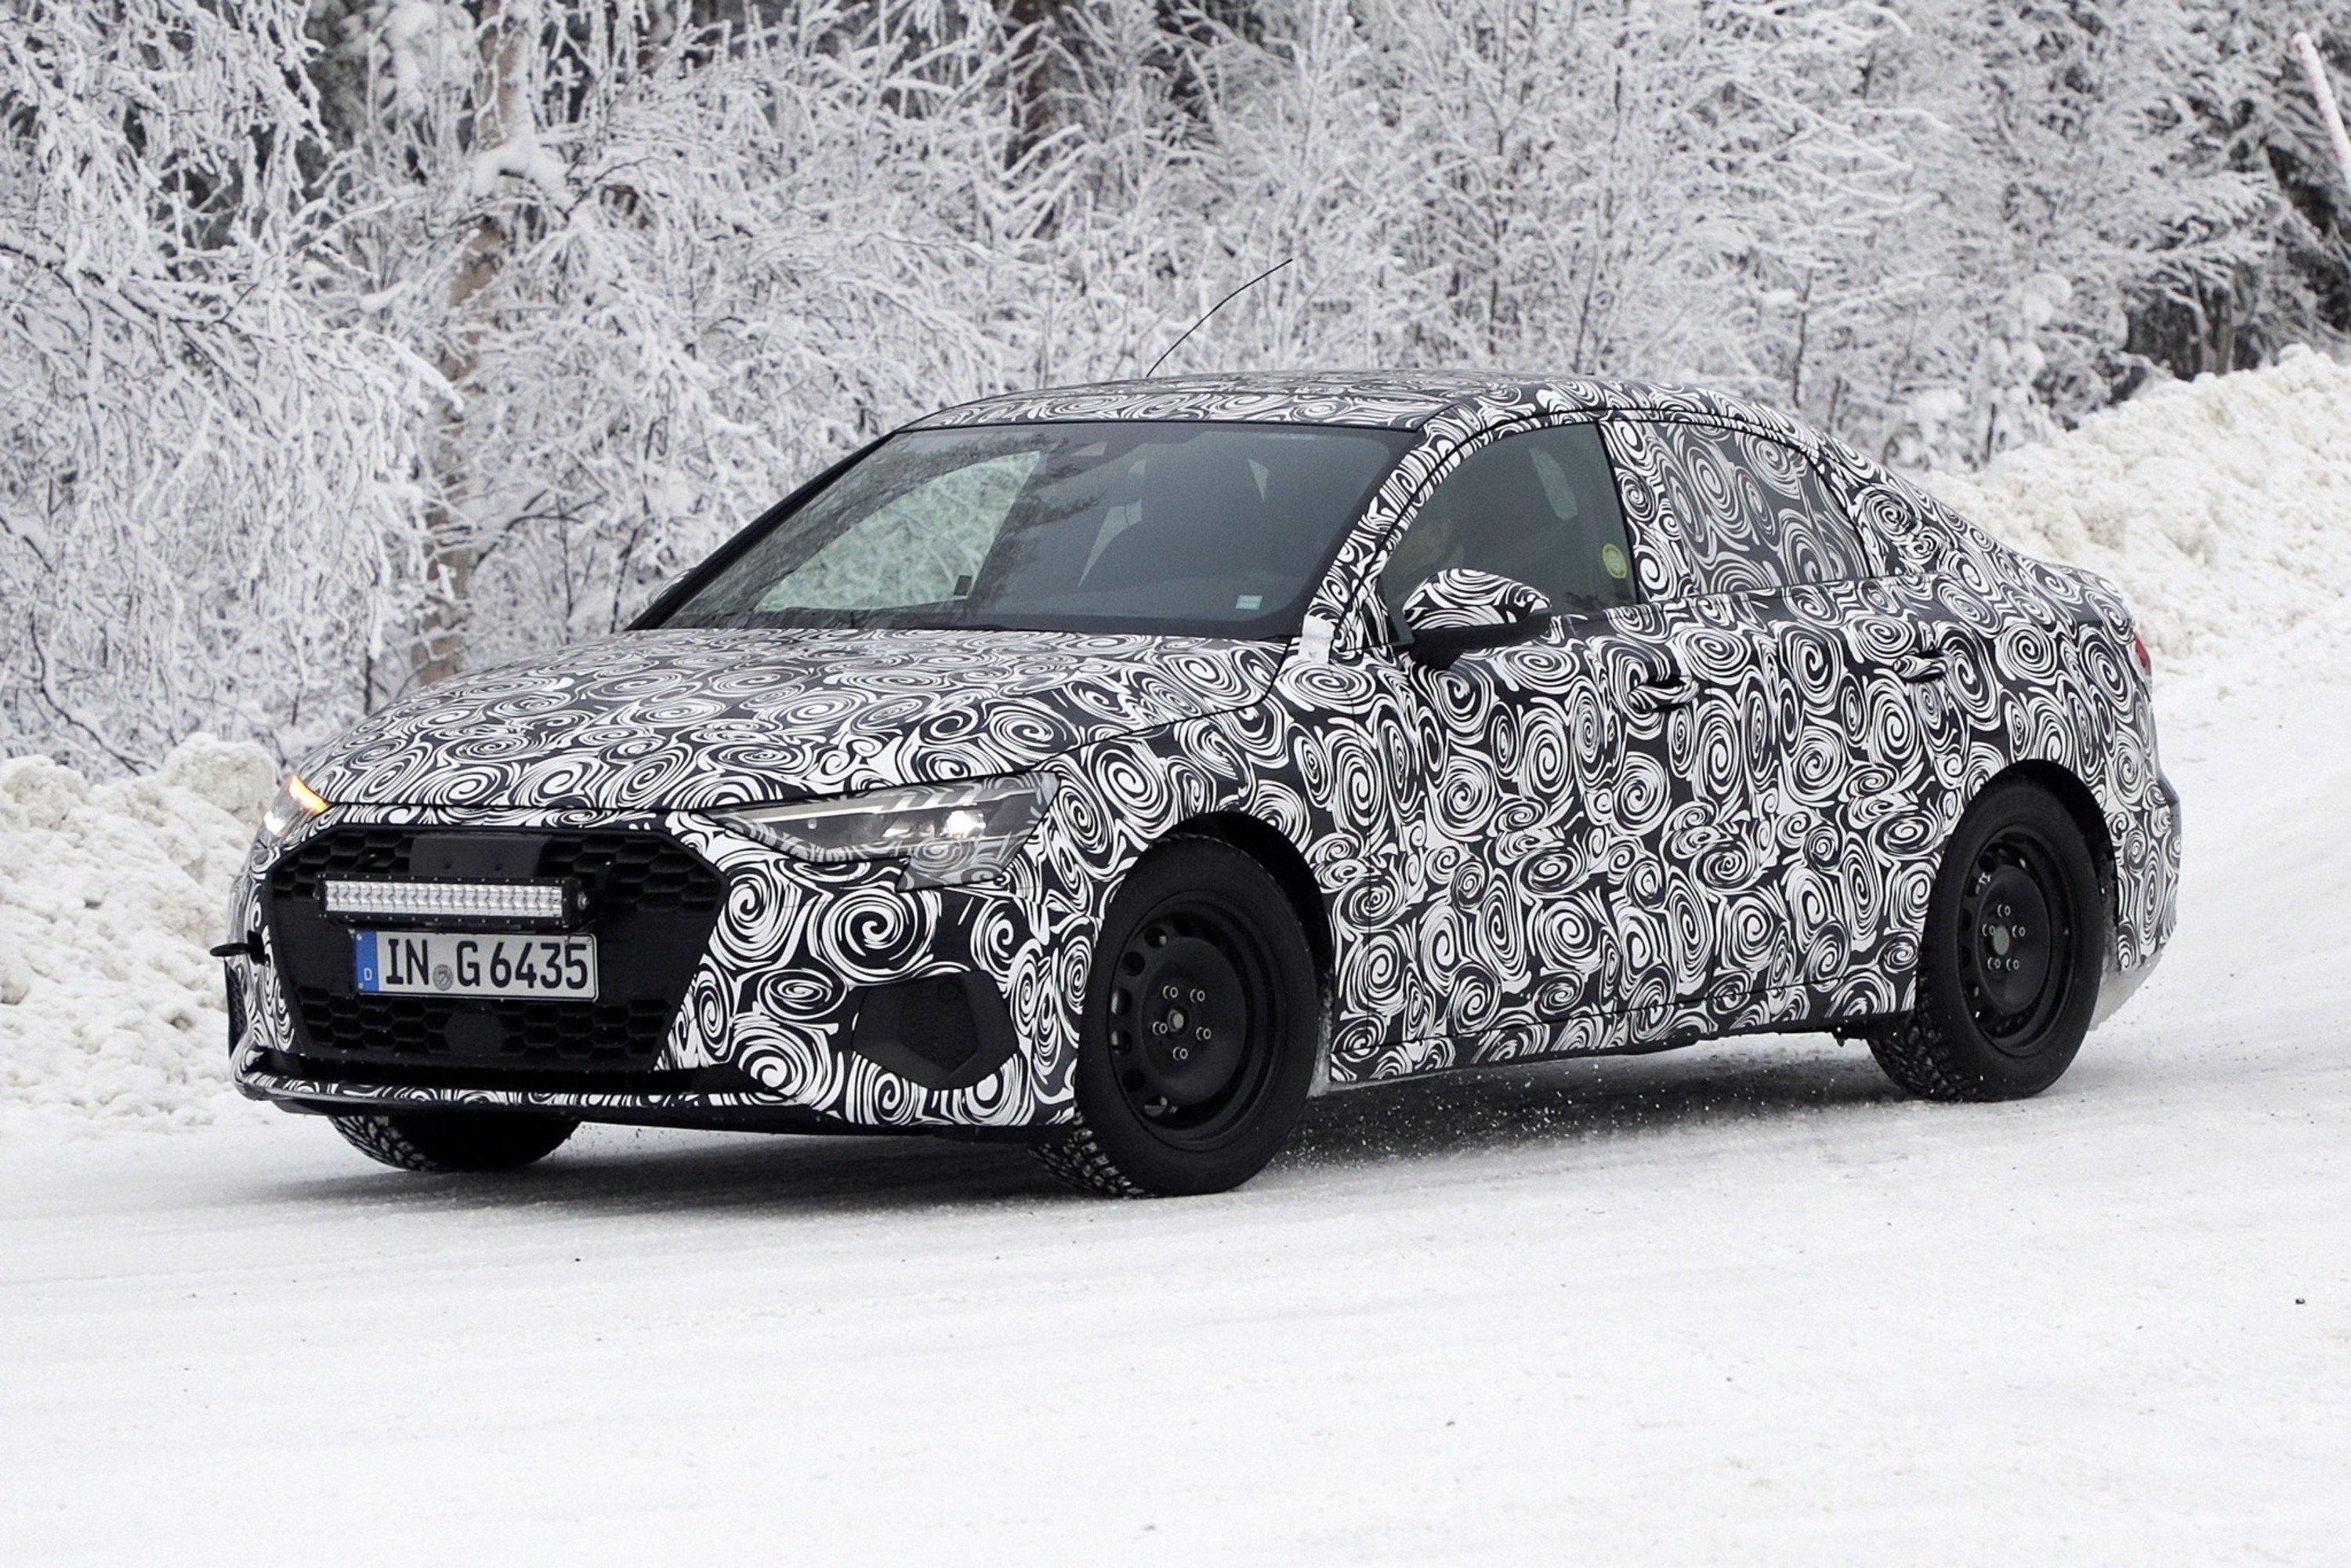 Audi A3: continuano i test sulla nuova generazione [Foto spia]